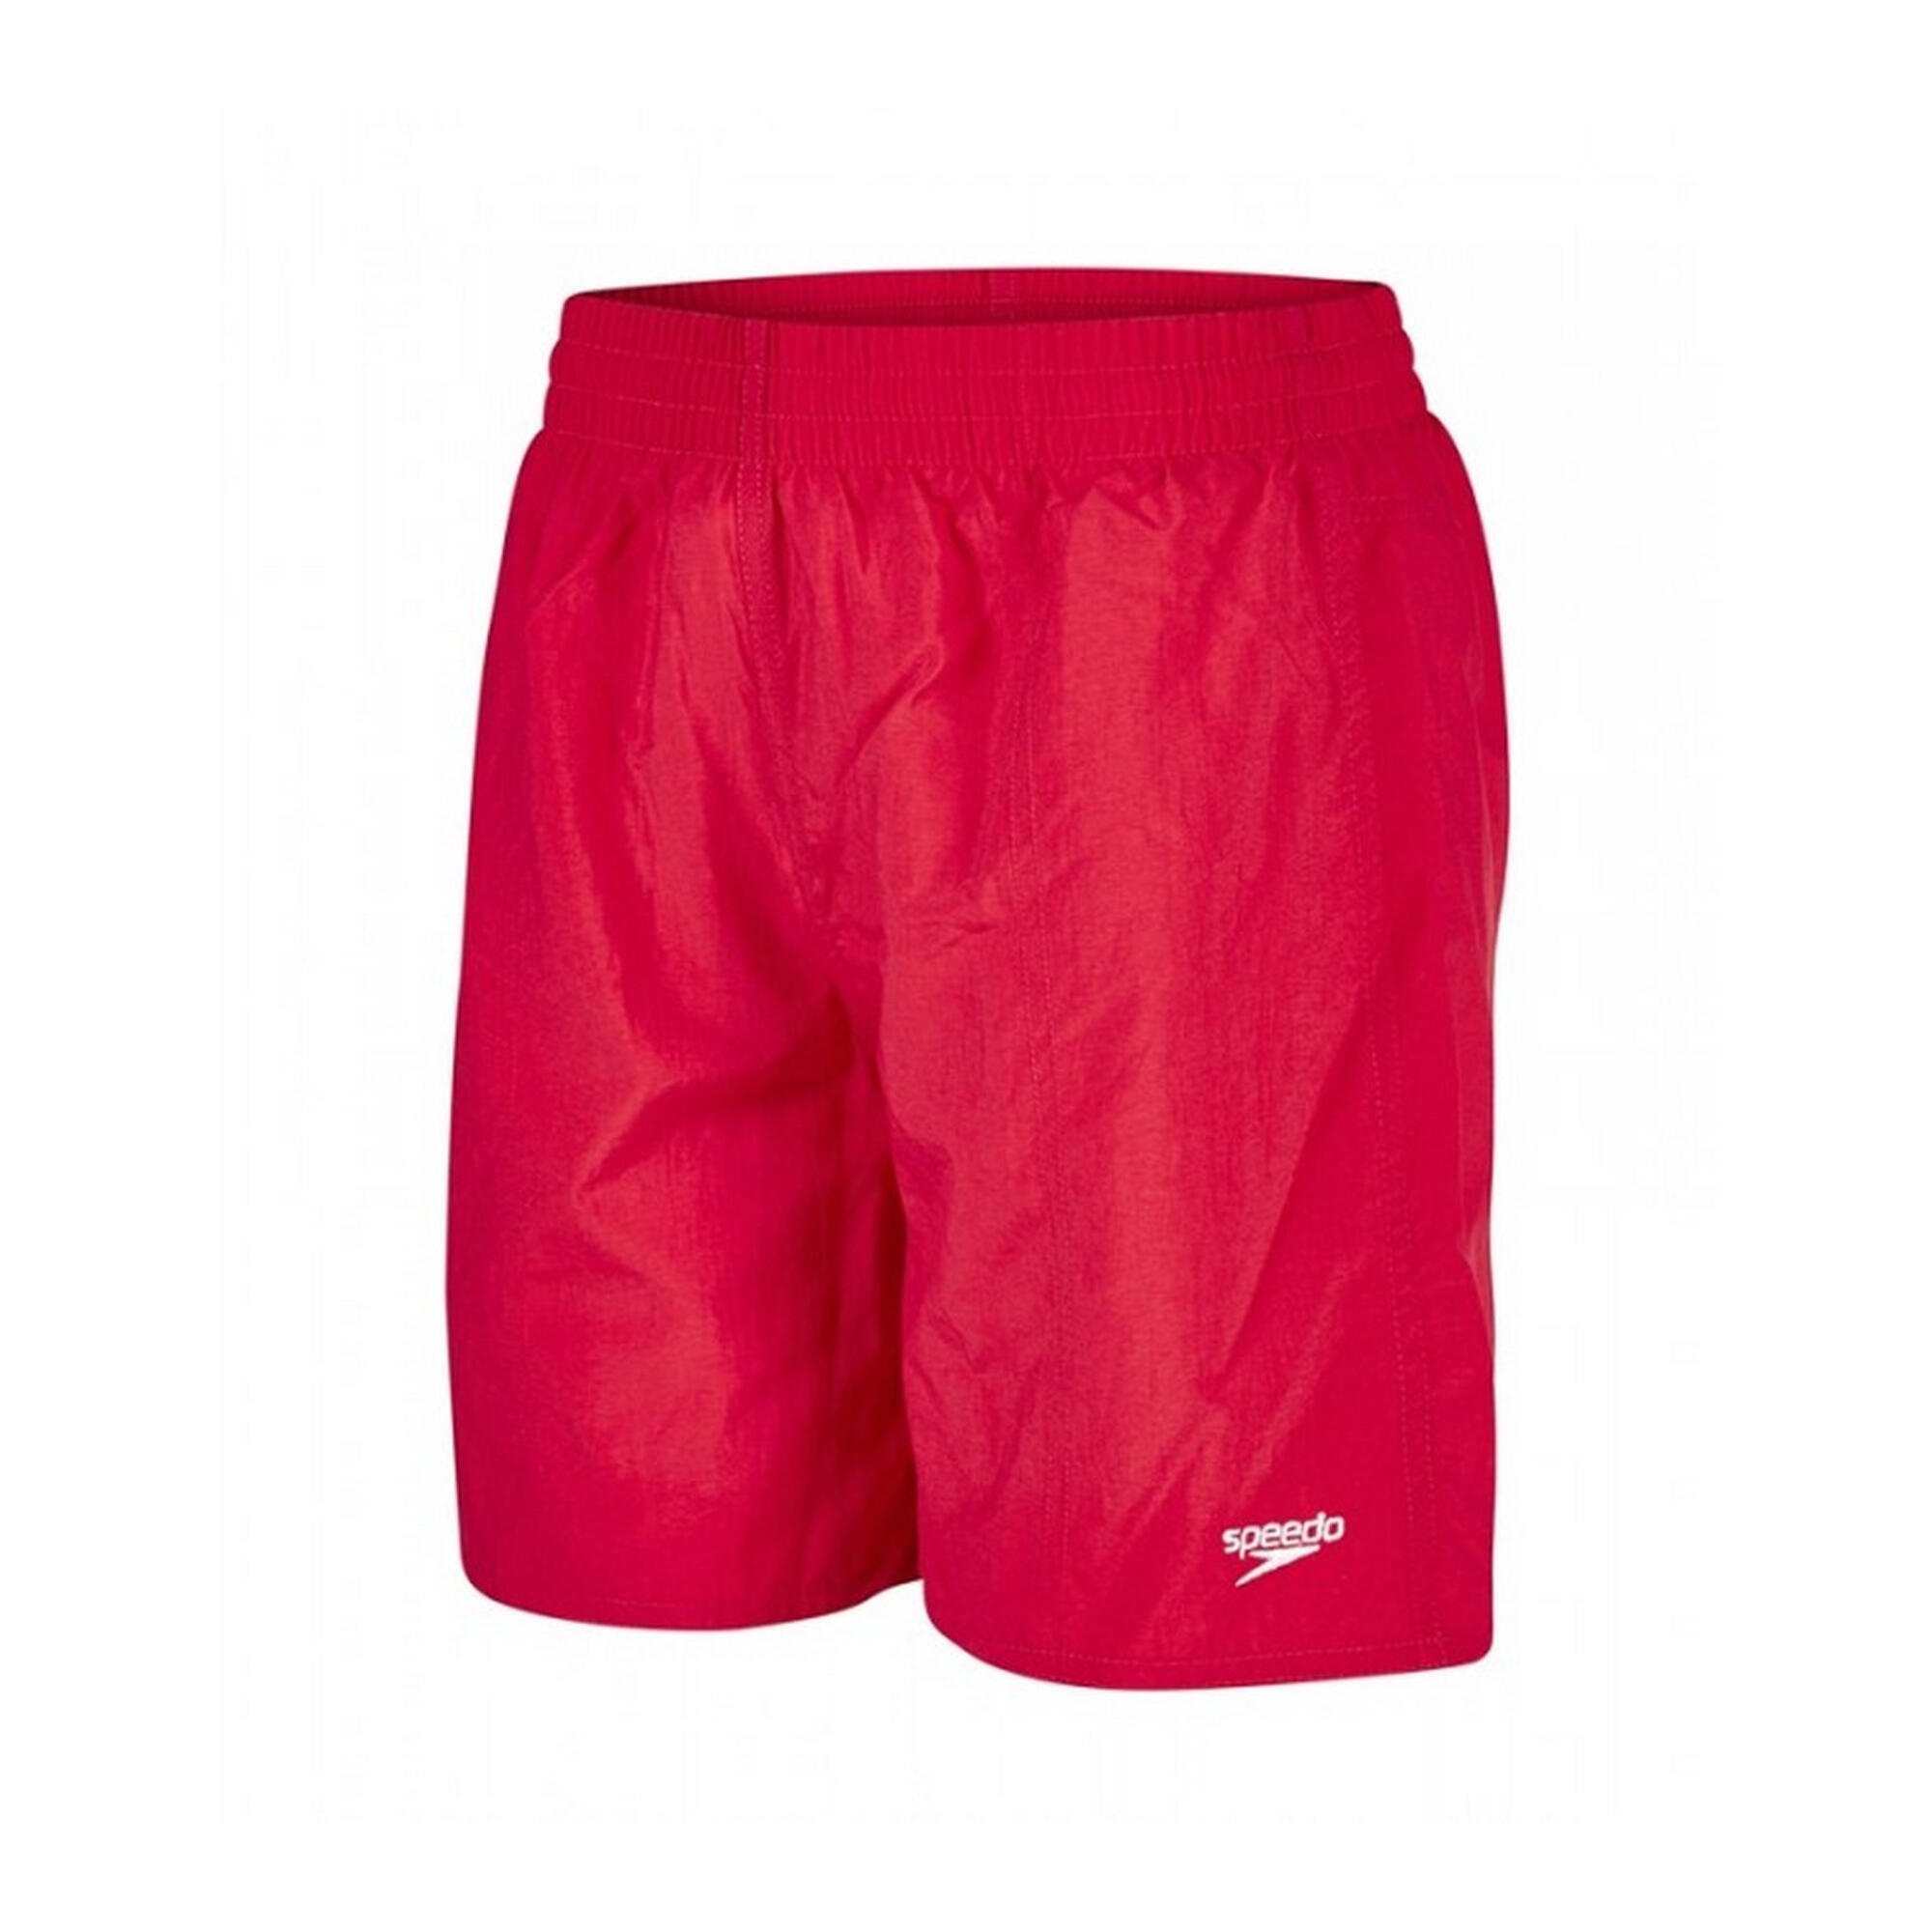 SPEEDO Mens Leisure Swim Shorts (Red)